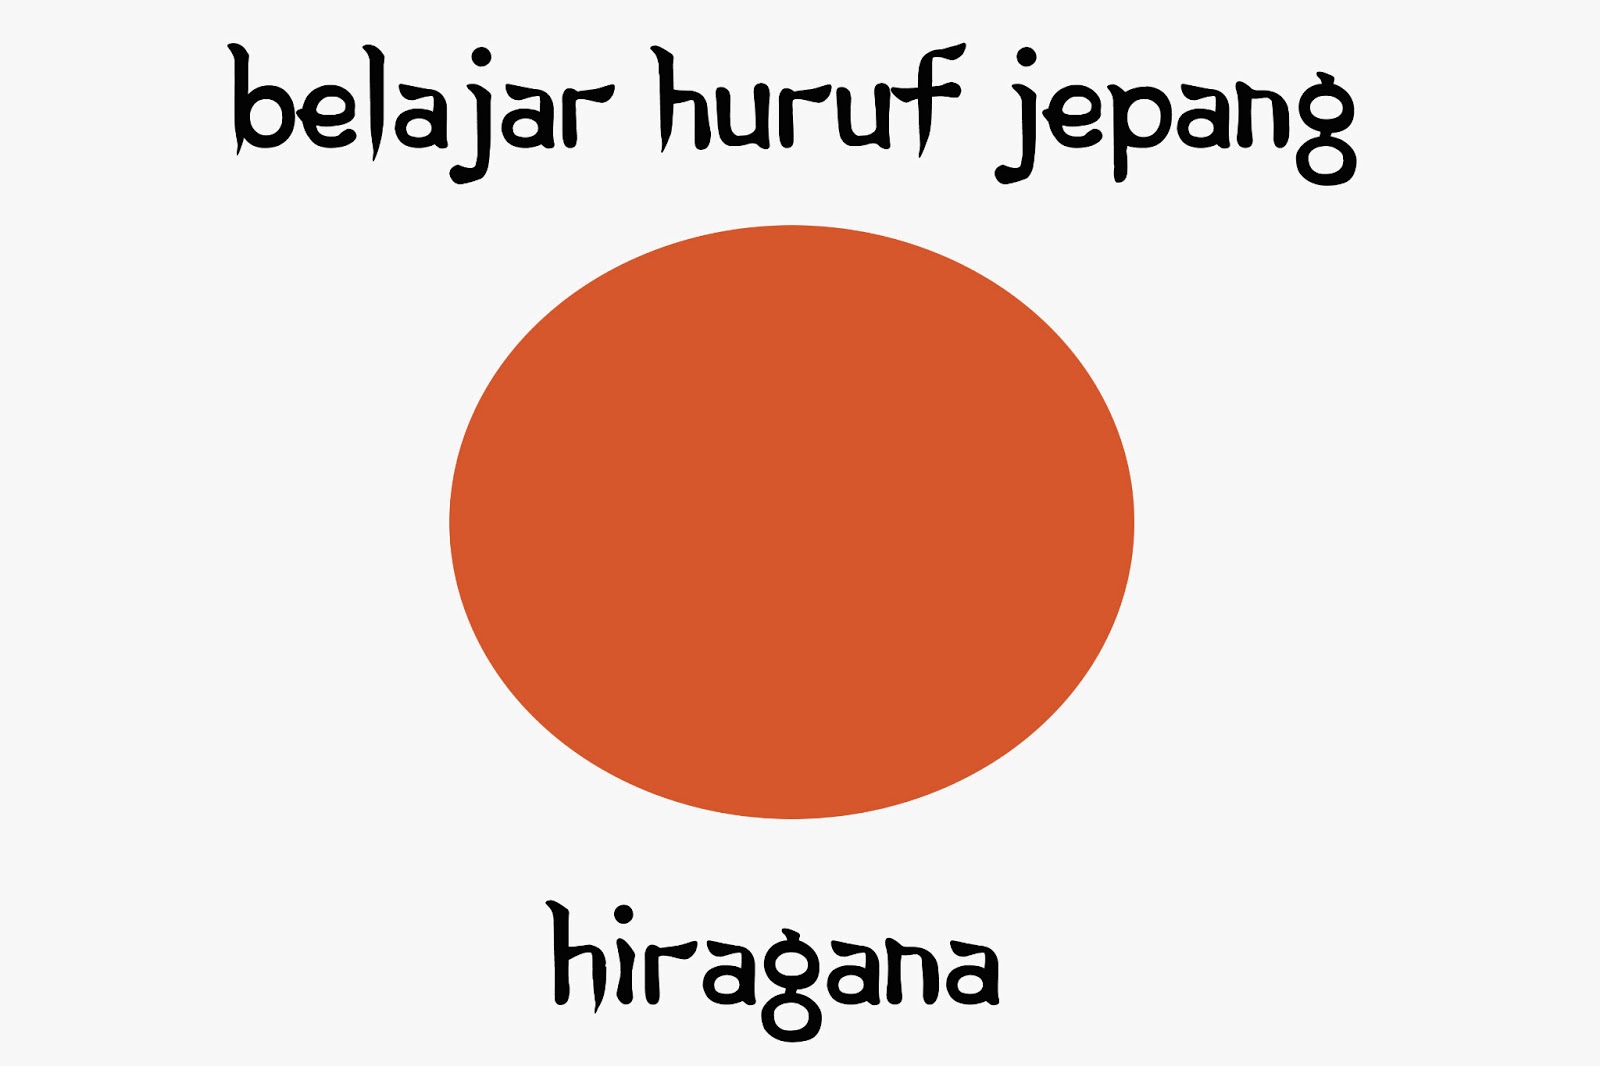 Jarvajar Belajar Huruf Jepang  Hiragana 